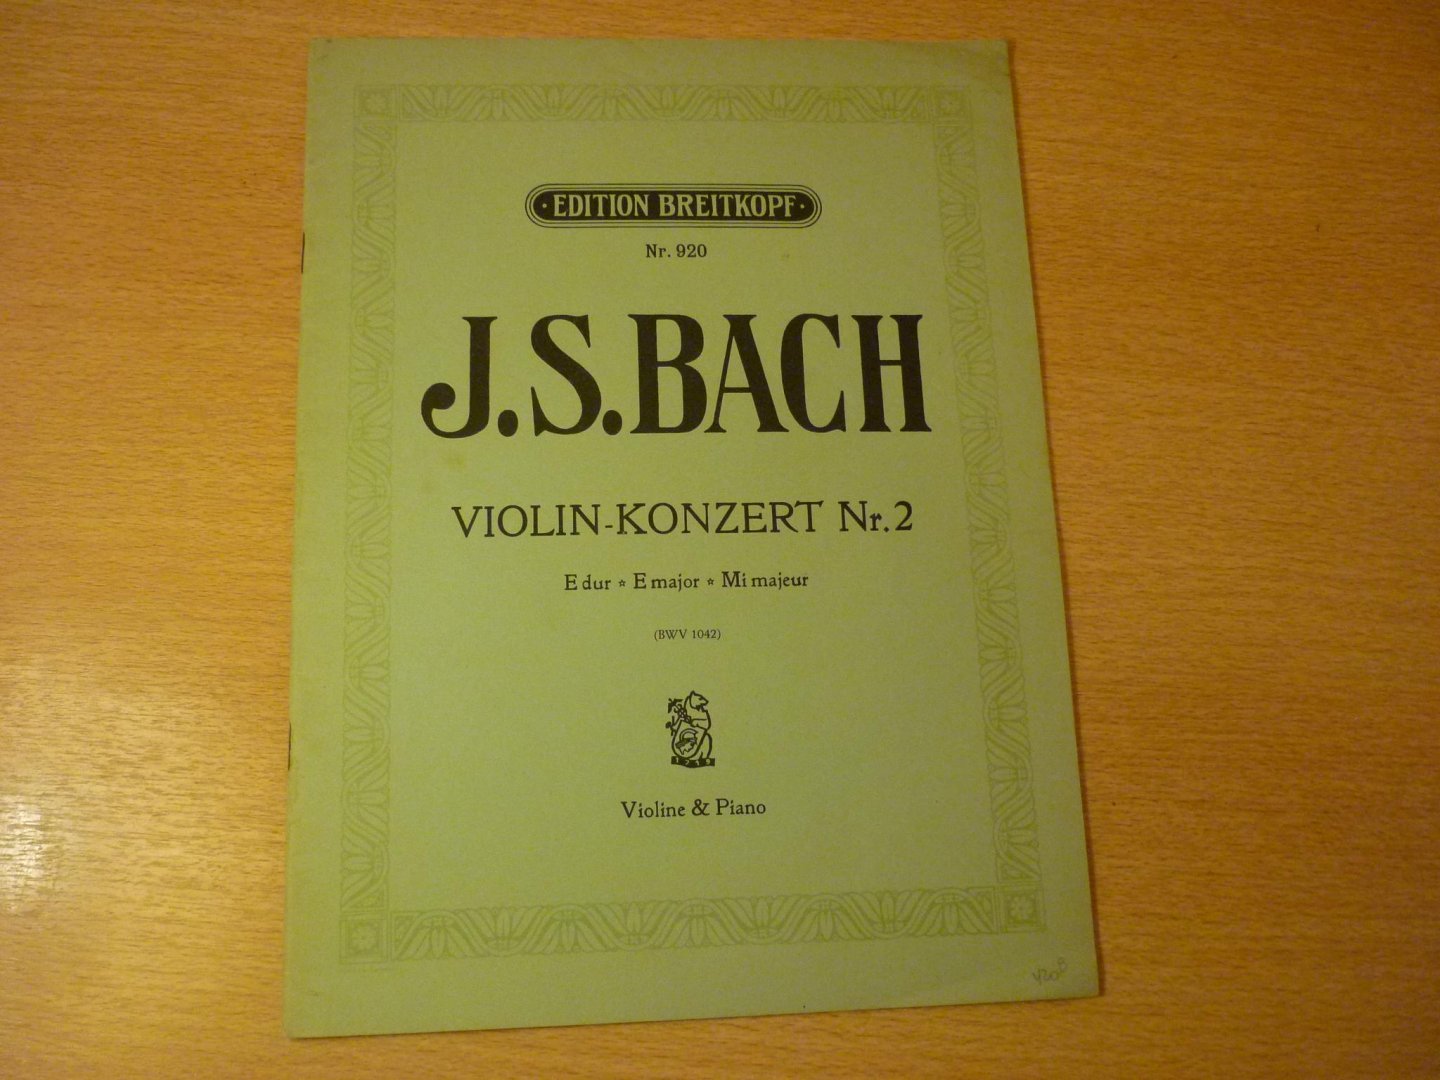 Bach; J. S.  (1685-1750) - Violinkonzert E-Dur BWV 1042 für Violine und Klavier